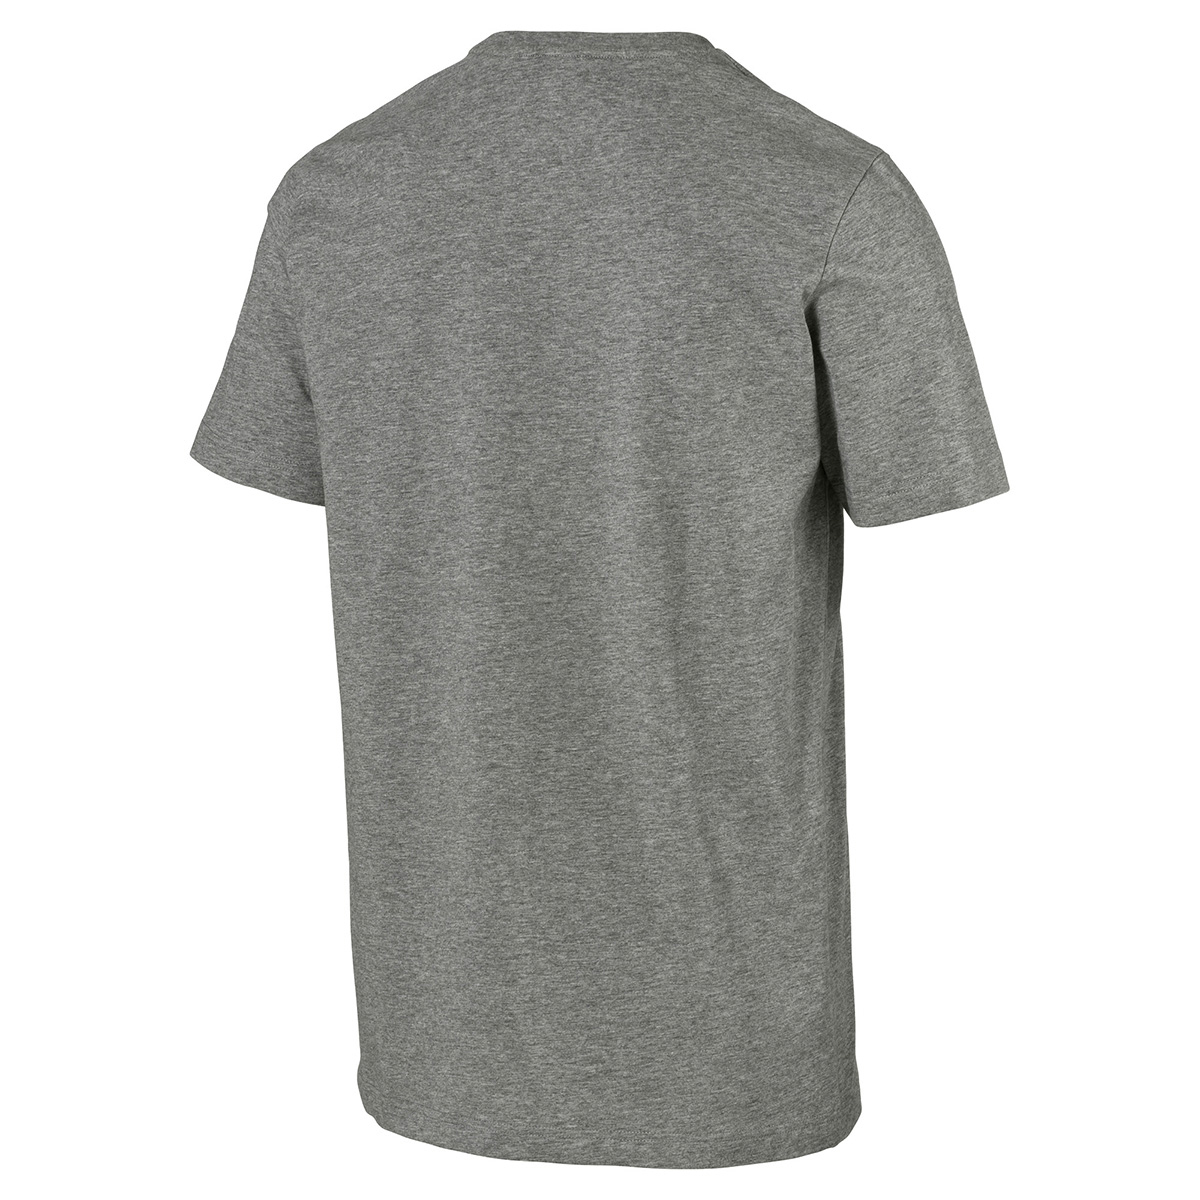 PUMA Herren Amplified Tee T-Shirt grau 854655 03